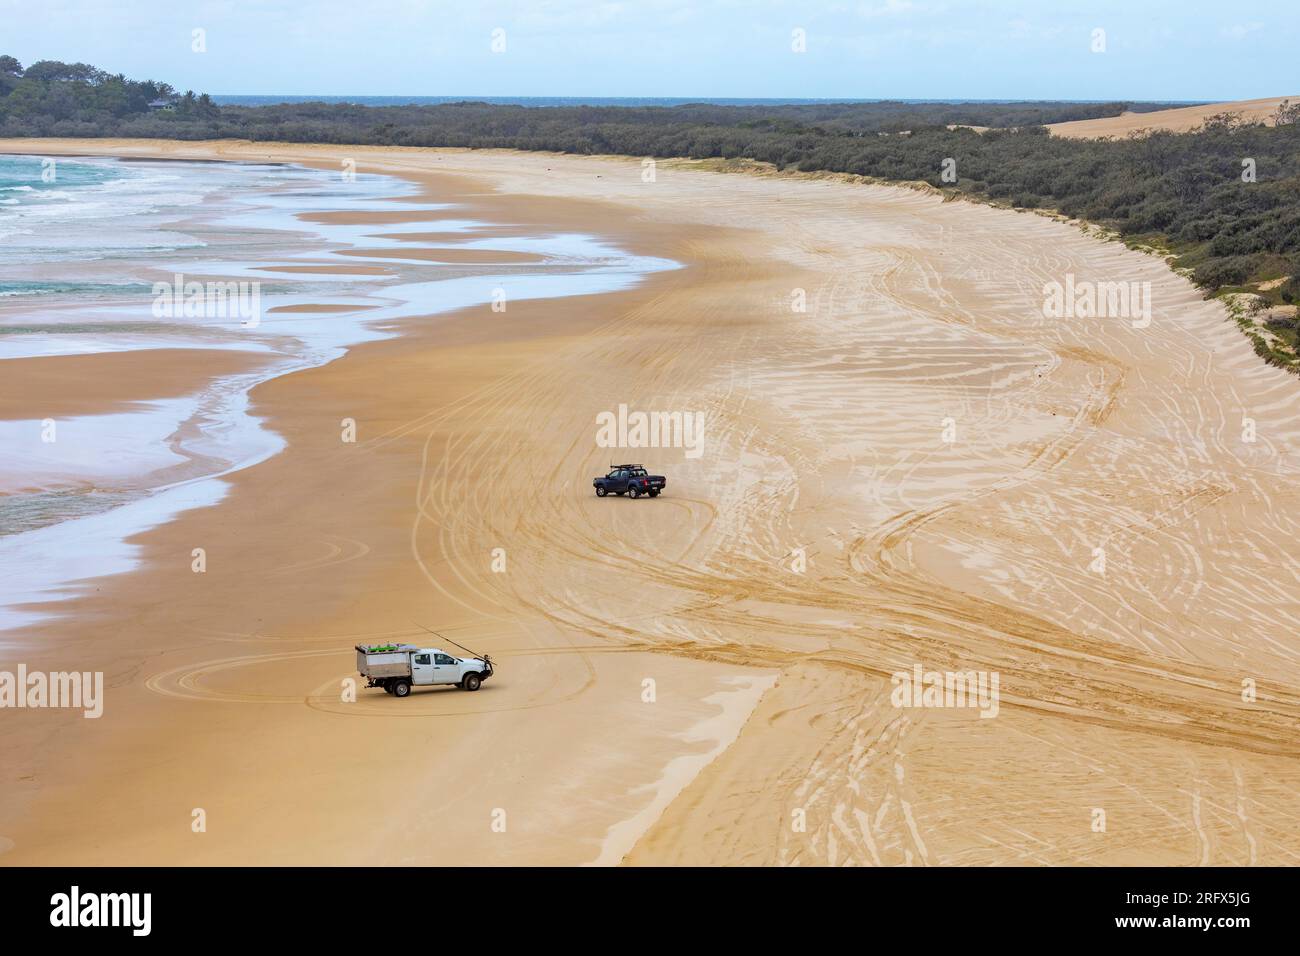 Fraser Island K'gari 75 Meile Beach Sand Road und 4WD Fahrzeug Fahrt auf dem Sand, Queensland, Australien Stockfoto